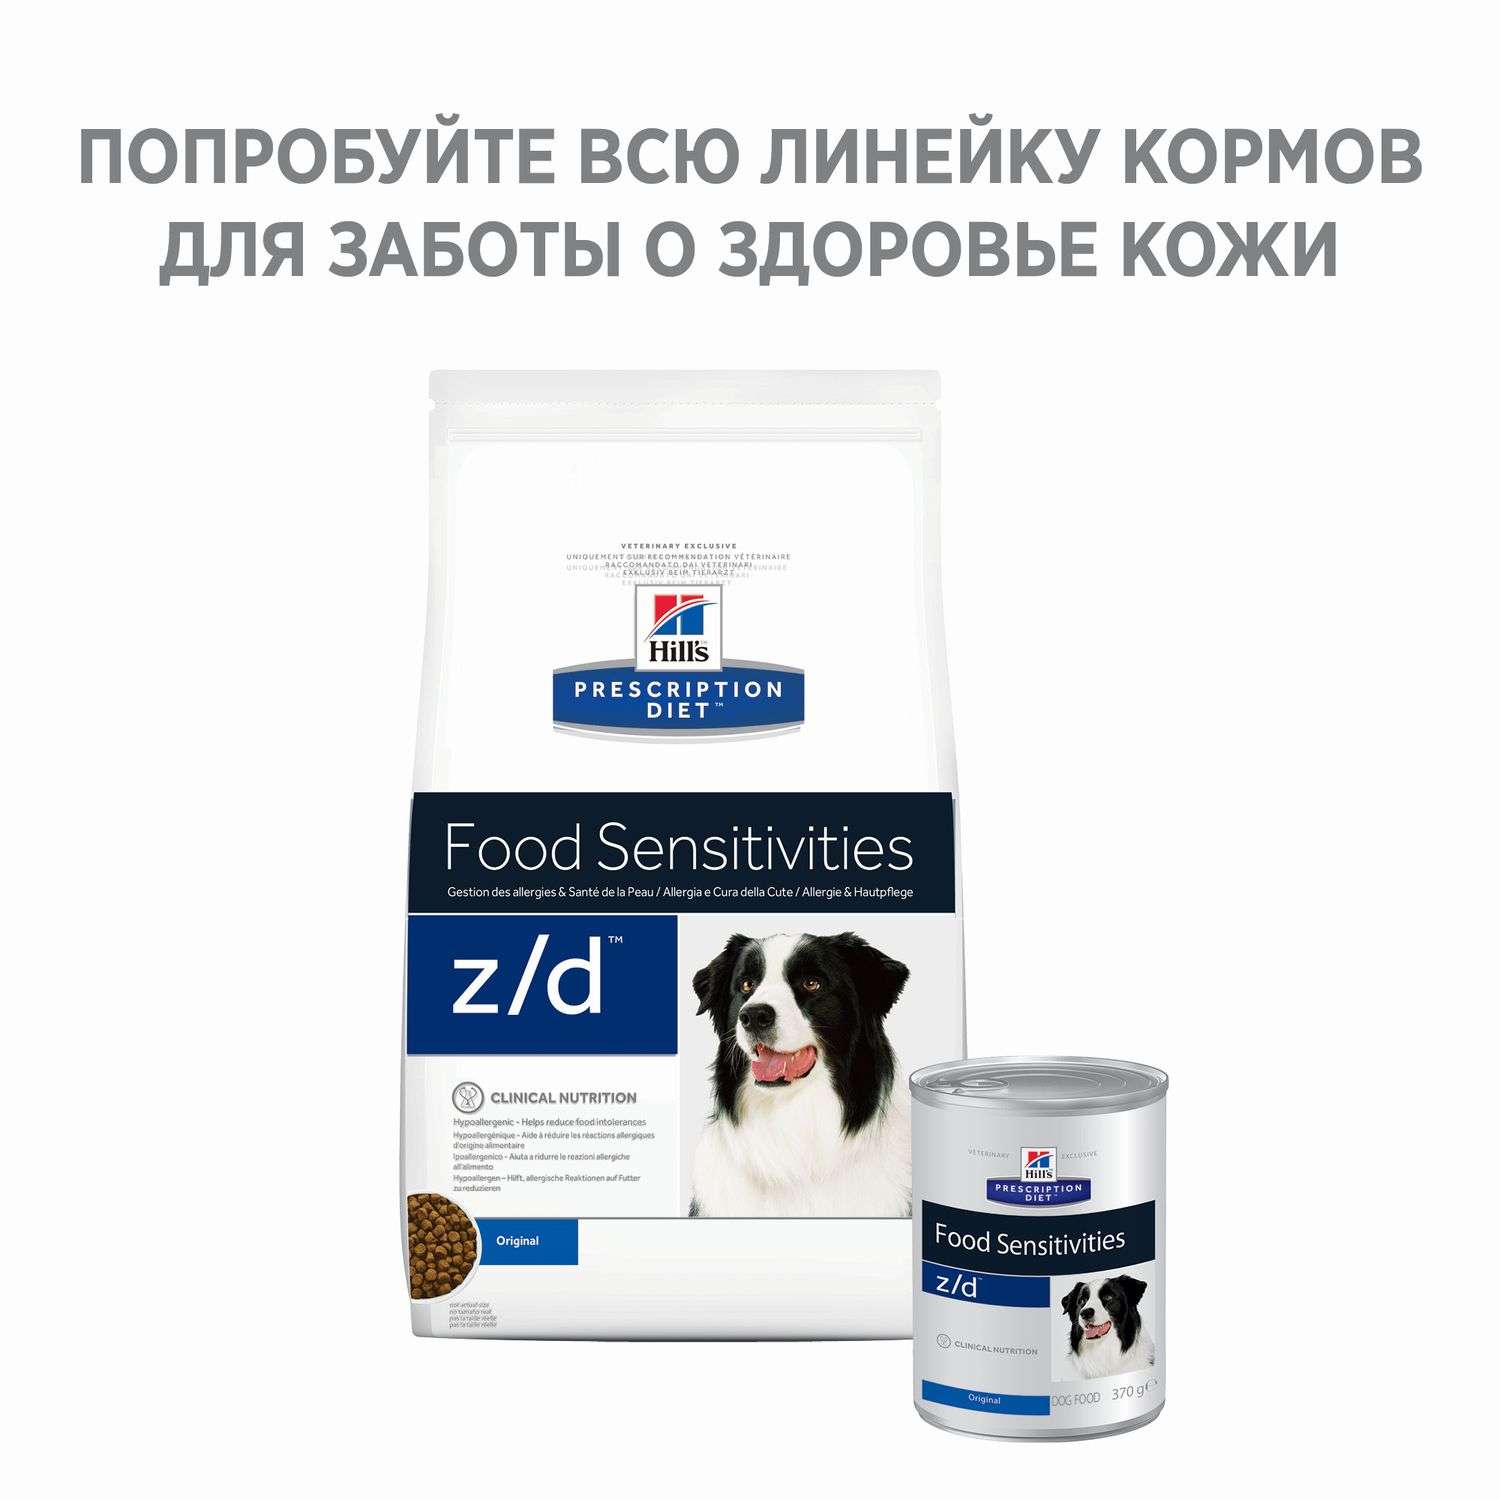 Корм для собак HILLS 8кг Prescription Diet z/d при аллергии и заболеваниях кожи - фото 4